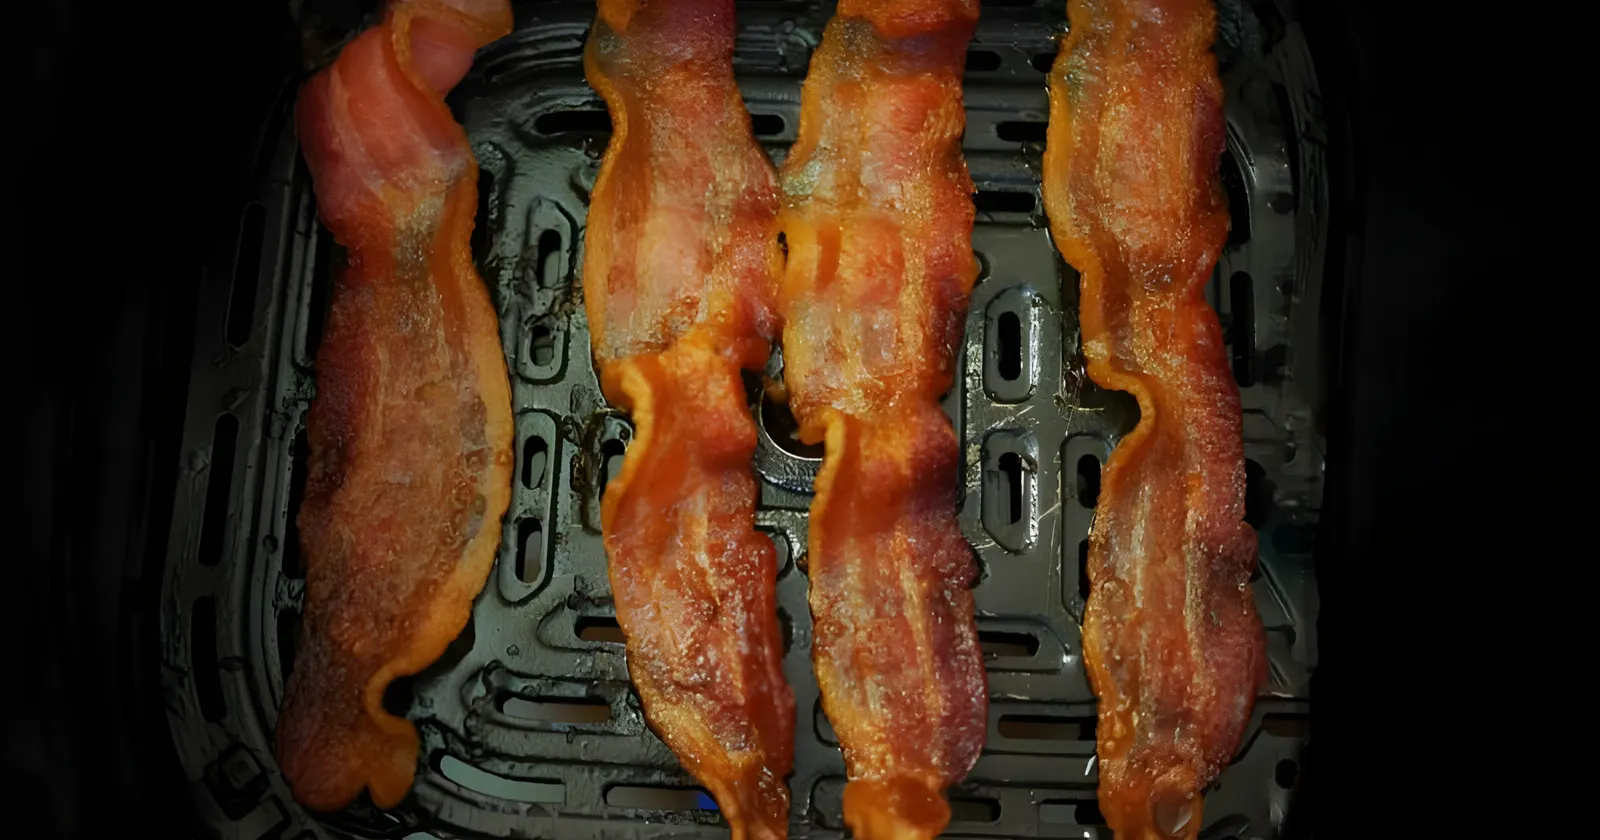 Crispy bacon in air fryer